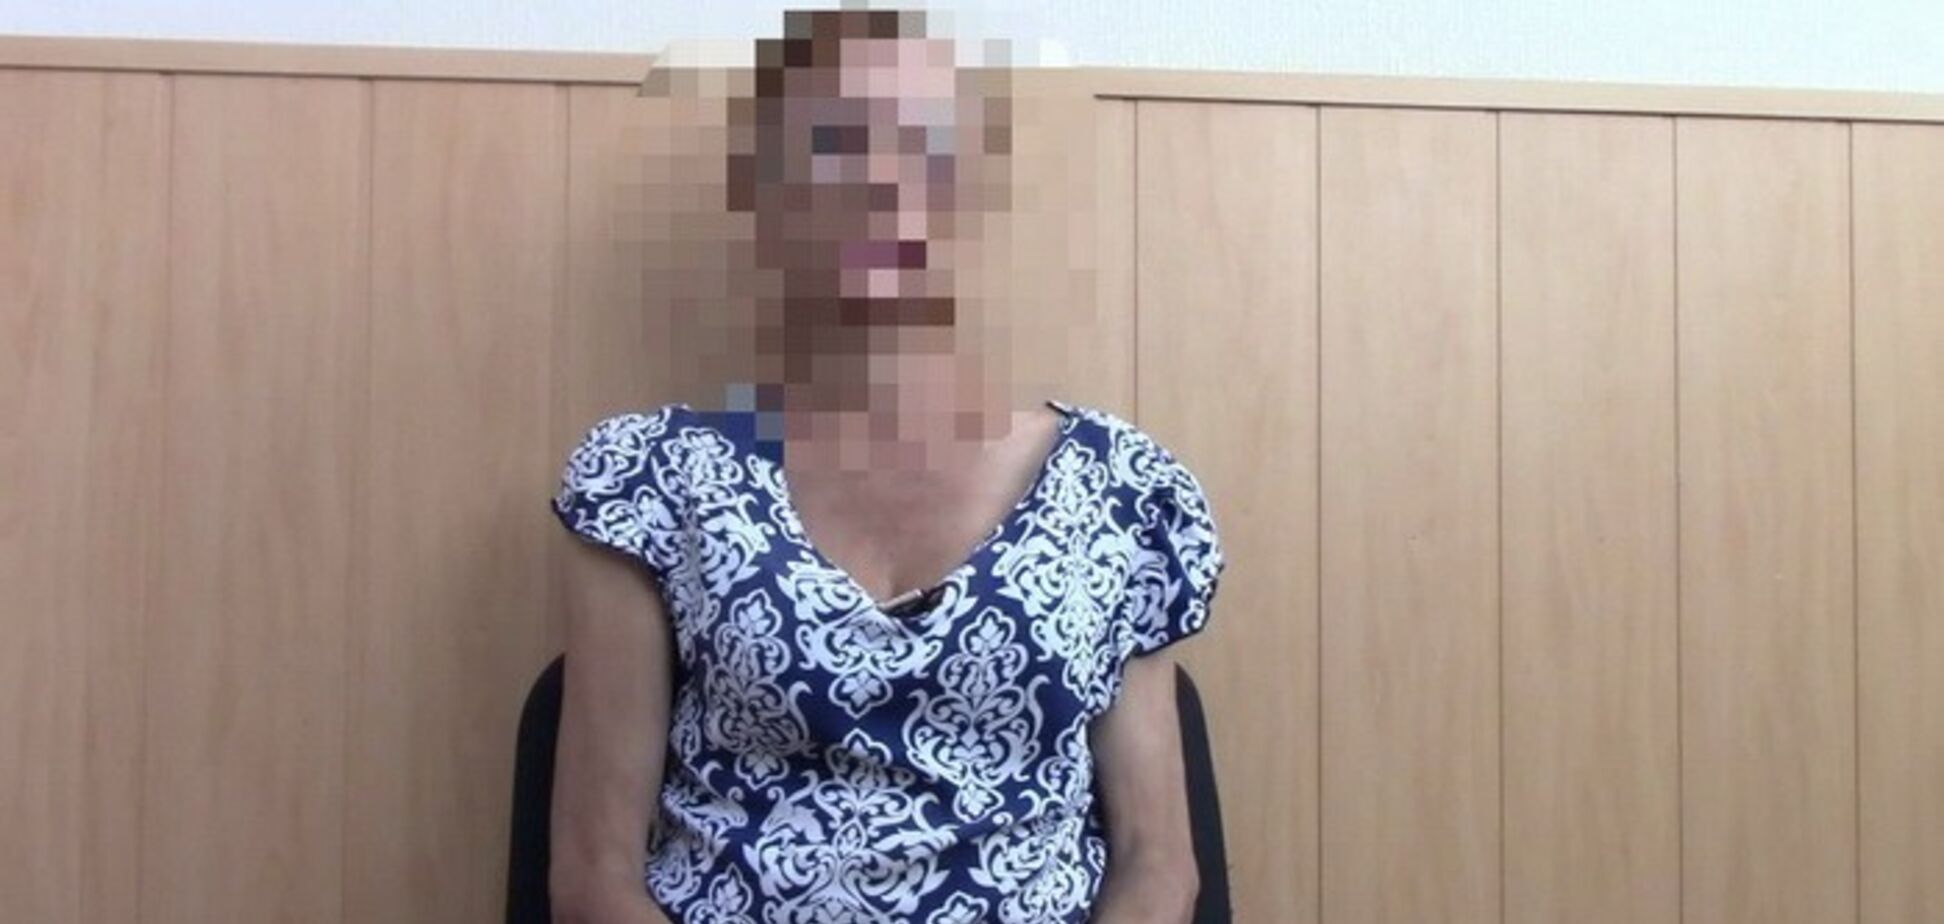 СБУ задержала жительницу Днепра за работу на российские спецслужбы. Фото и видео